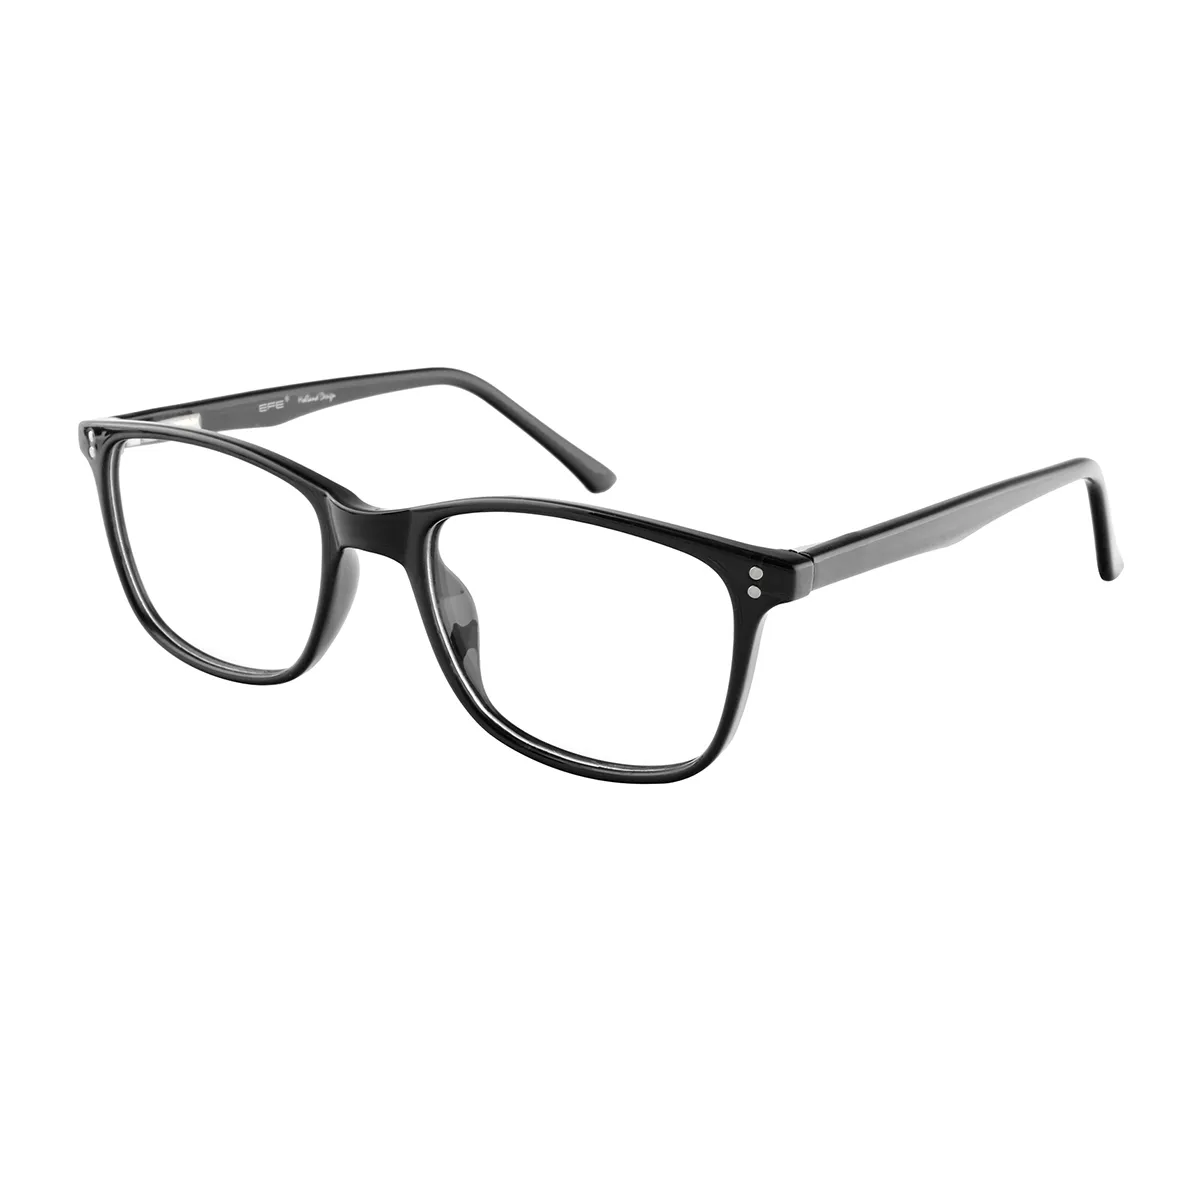 Herron - Square Black Glasses for Men & Women - EFE